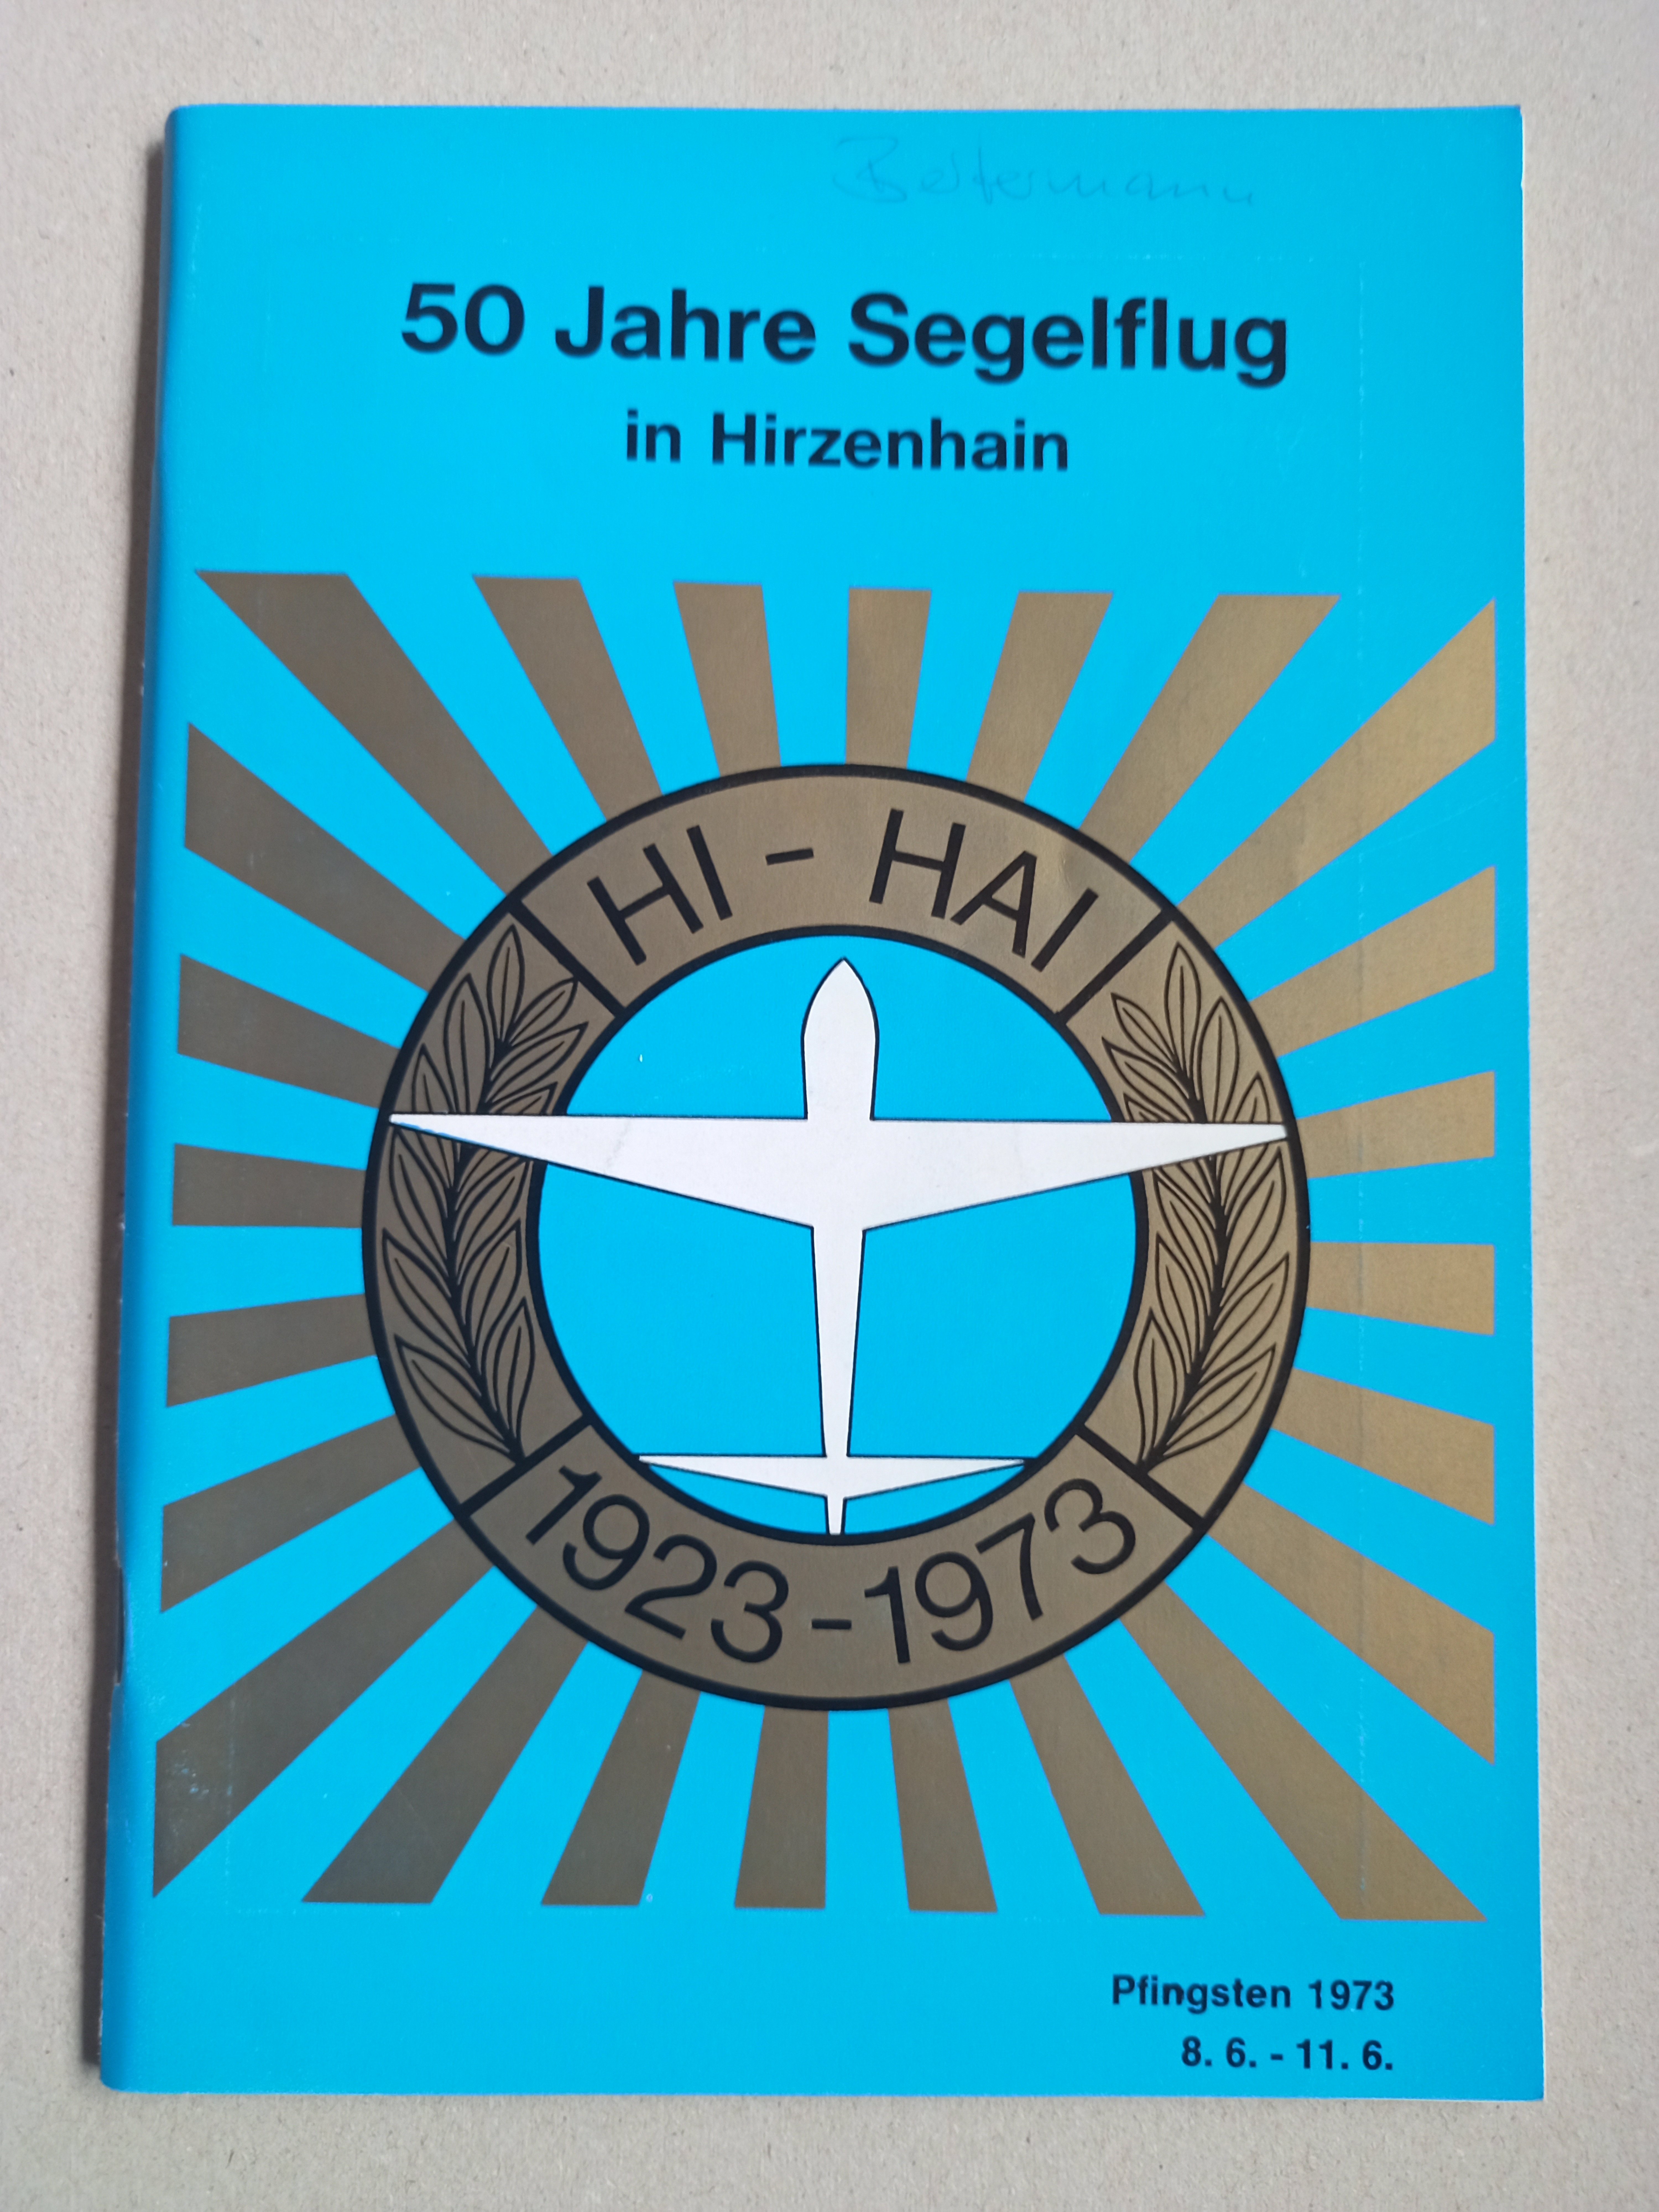 Hirzenhain 50 Jahre (Deutsches Segelflugmuseum mit Modellflug CC BY-NC-SA)